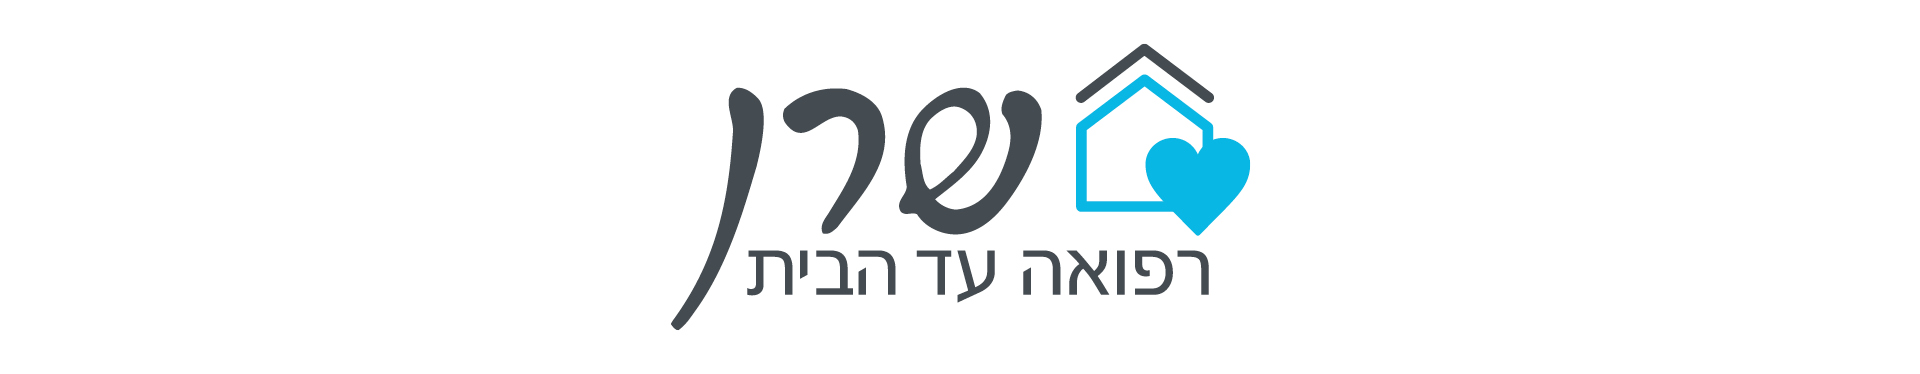 לוגו https://www.sharanmedical.co.il/